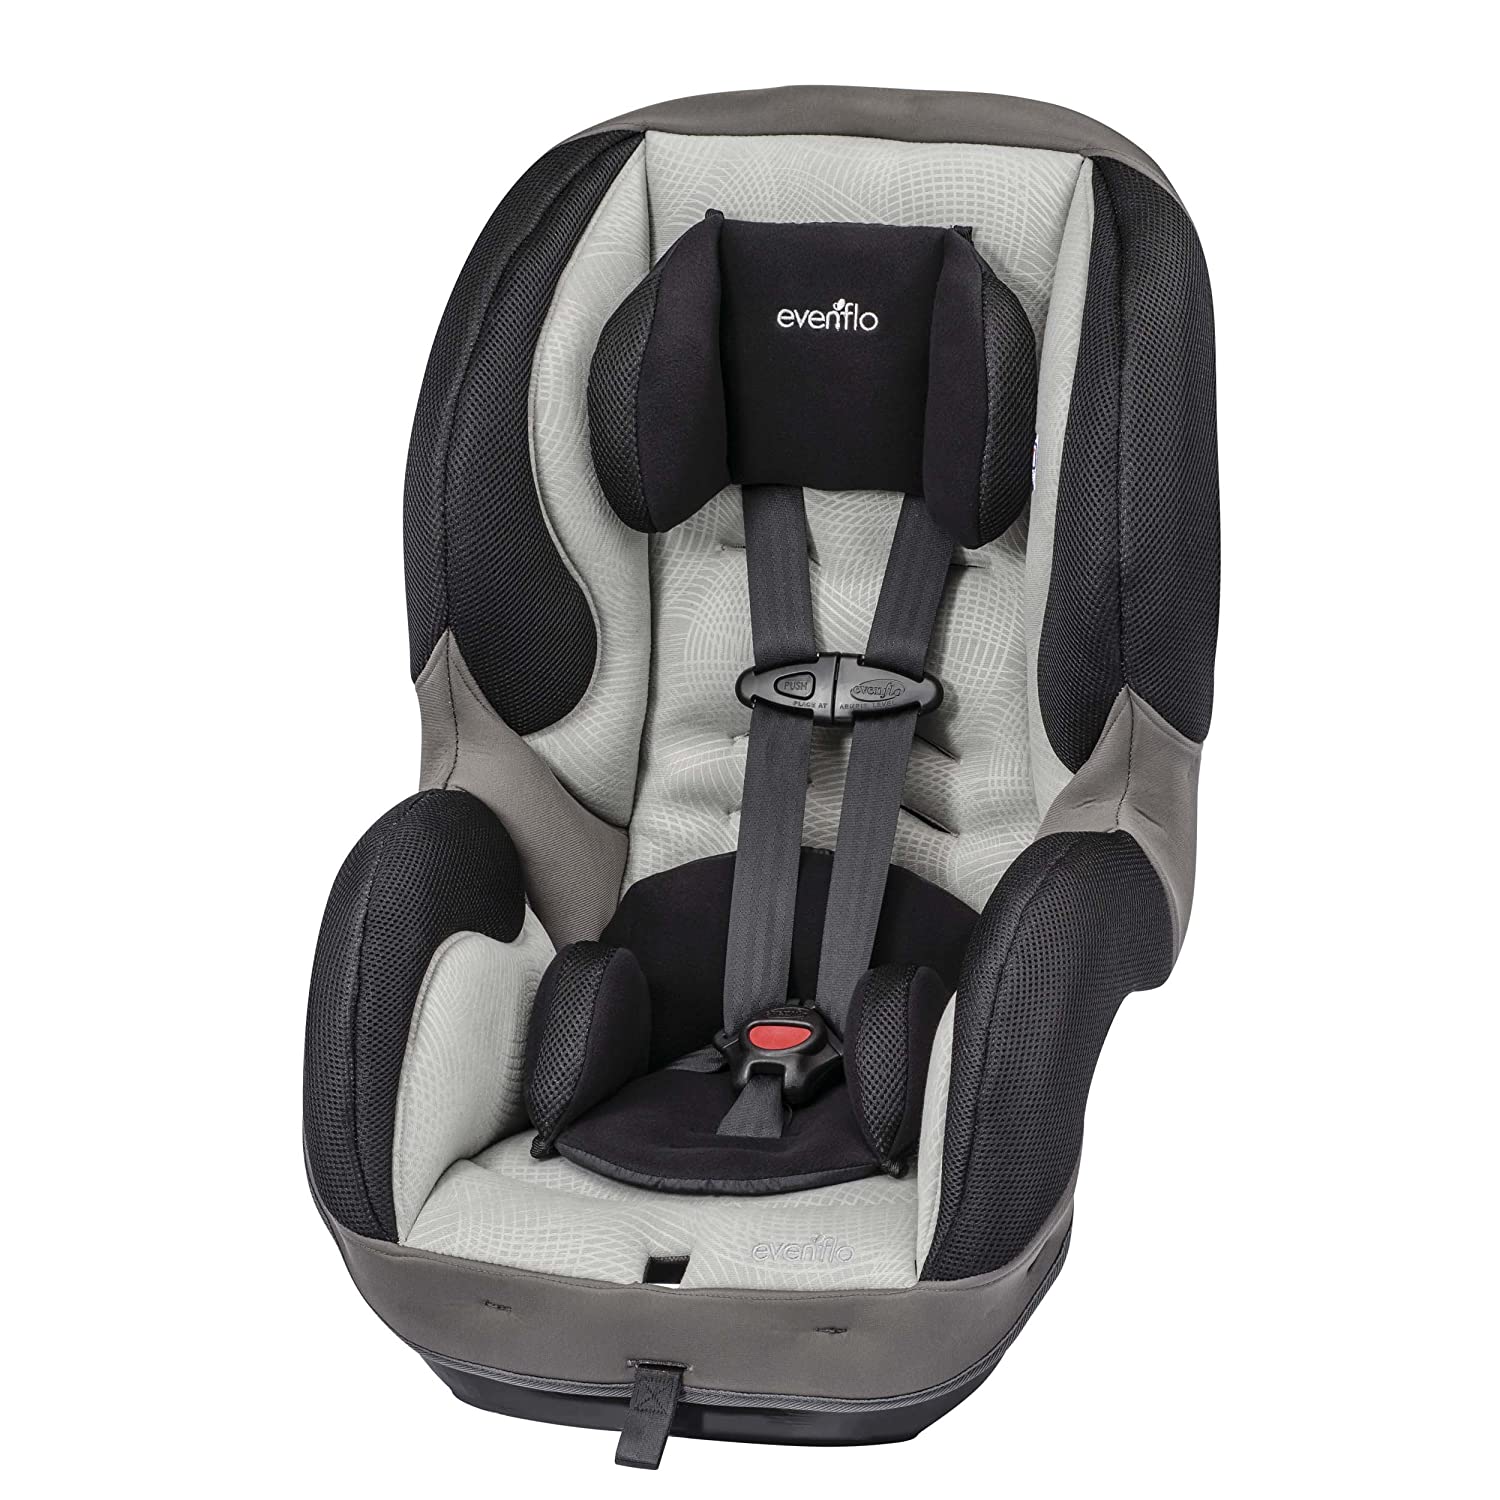 Evenflo SureRide DLX Convertible Car Seat ghế ô tô cho bé, chính hãng từ Mỹ